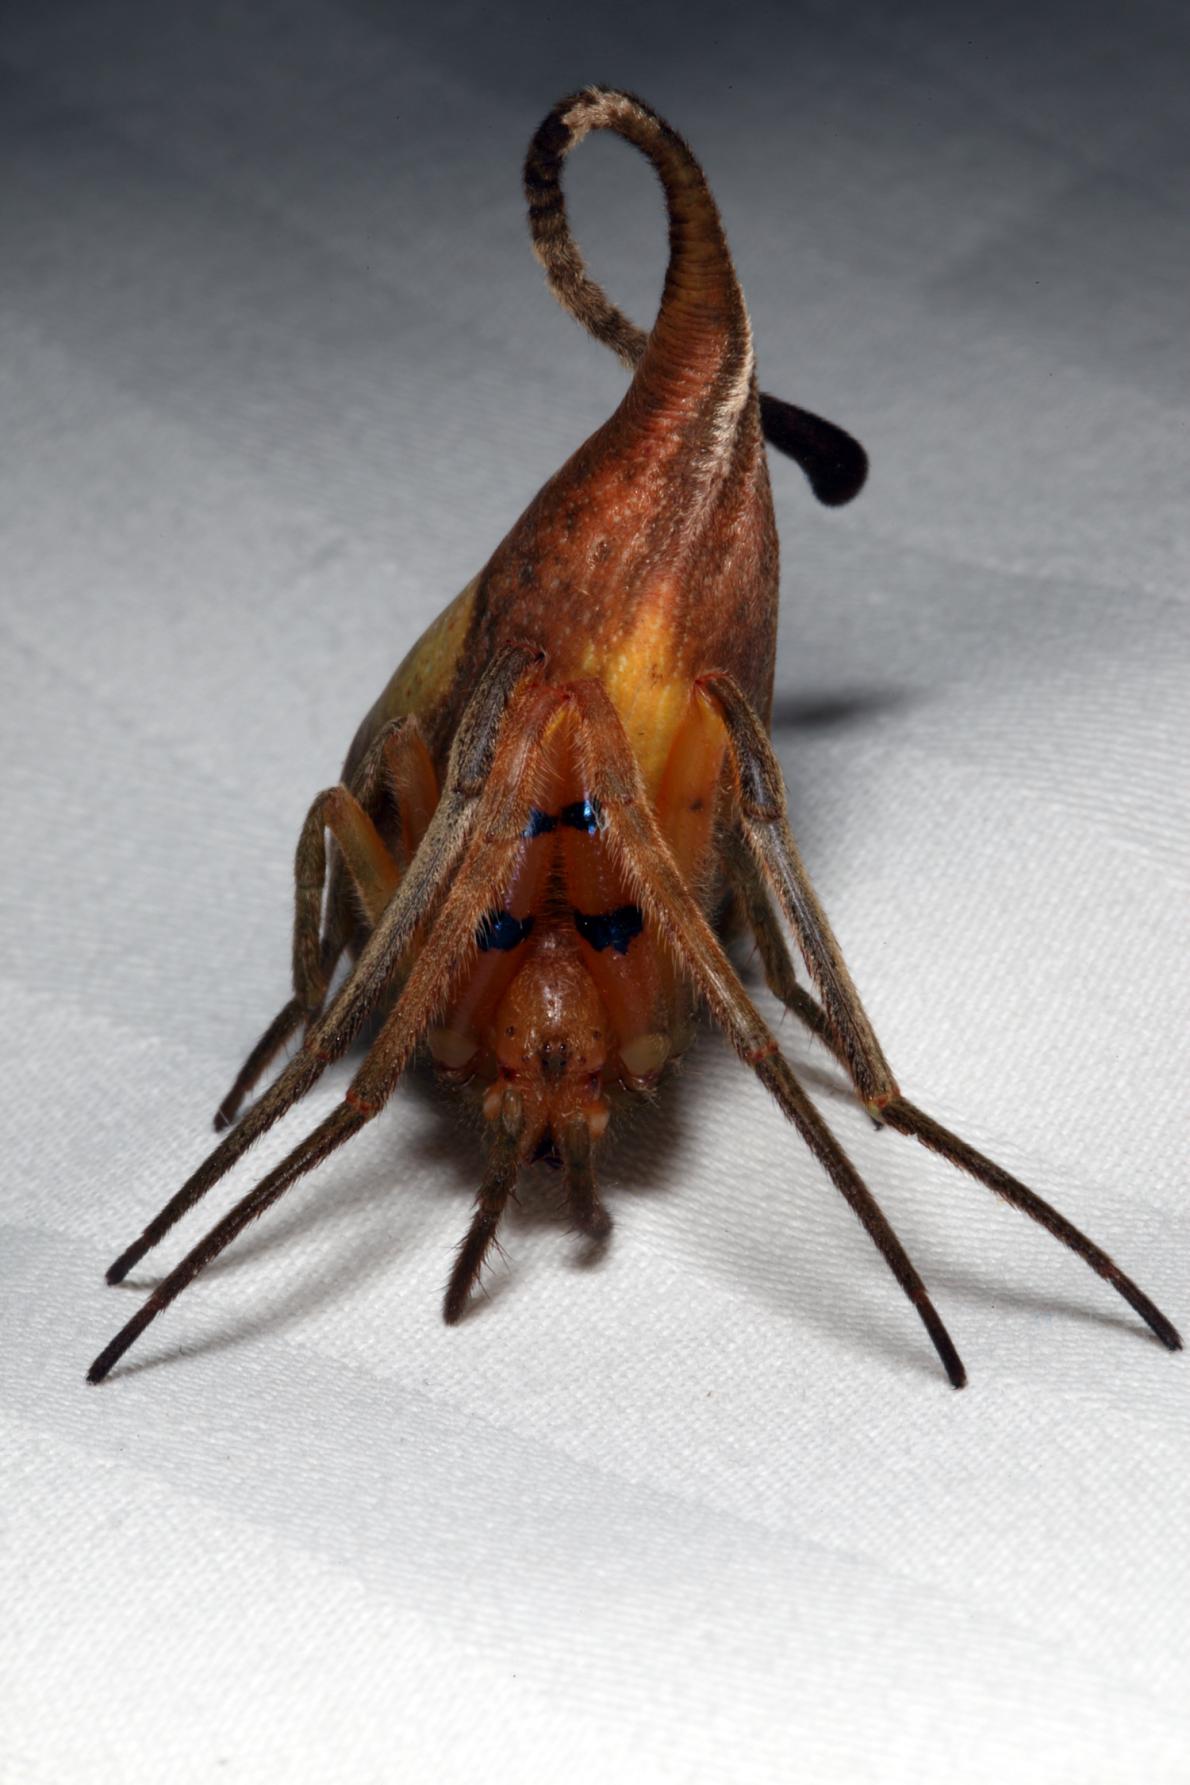 エイリアンのようなクモ発見 枯れ葉に擬態 ナショナルジオグラフィック日本版サイト